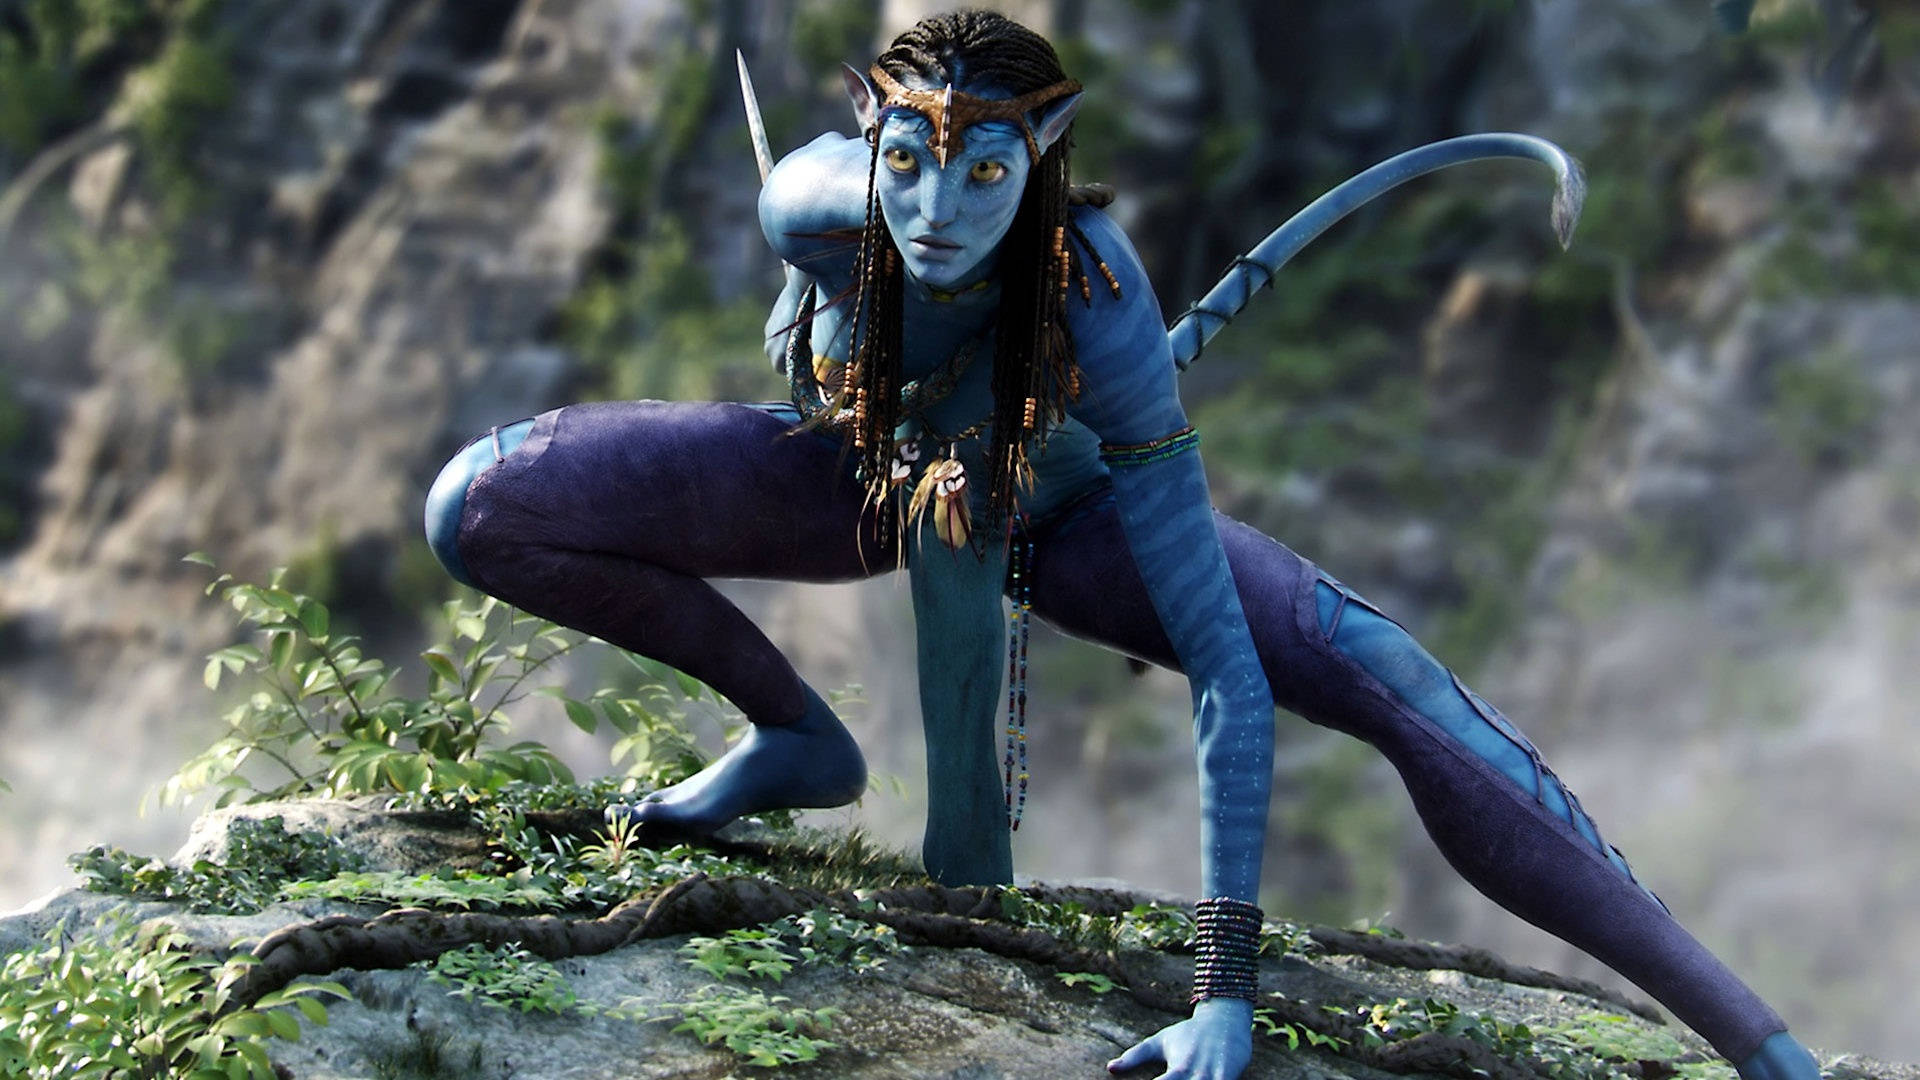 Avatar Neytiri In Battle Stance